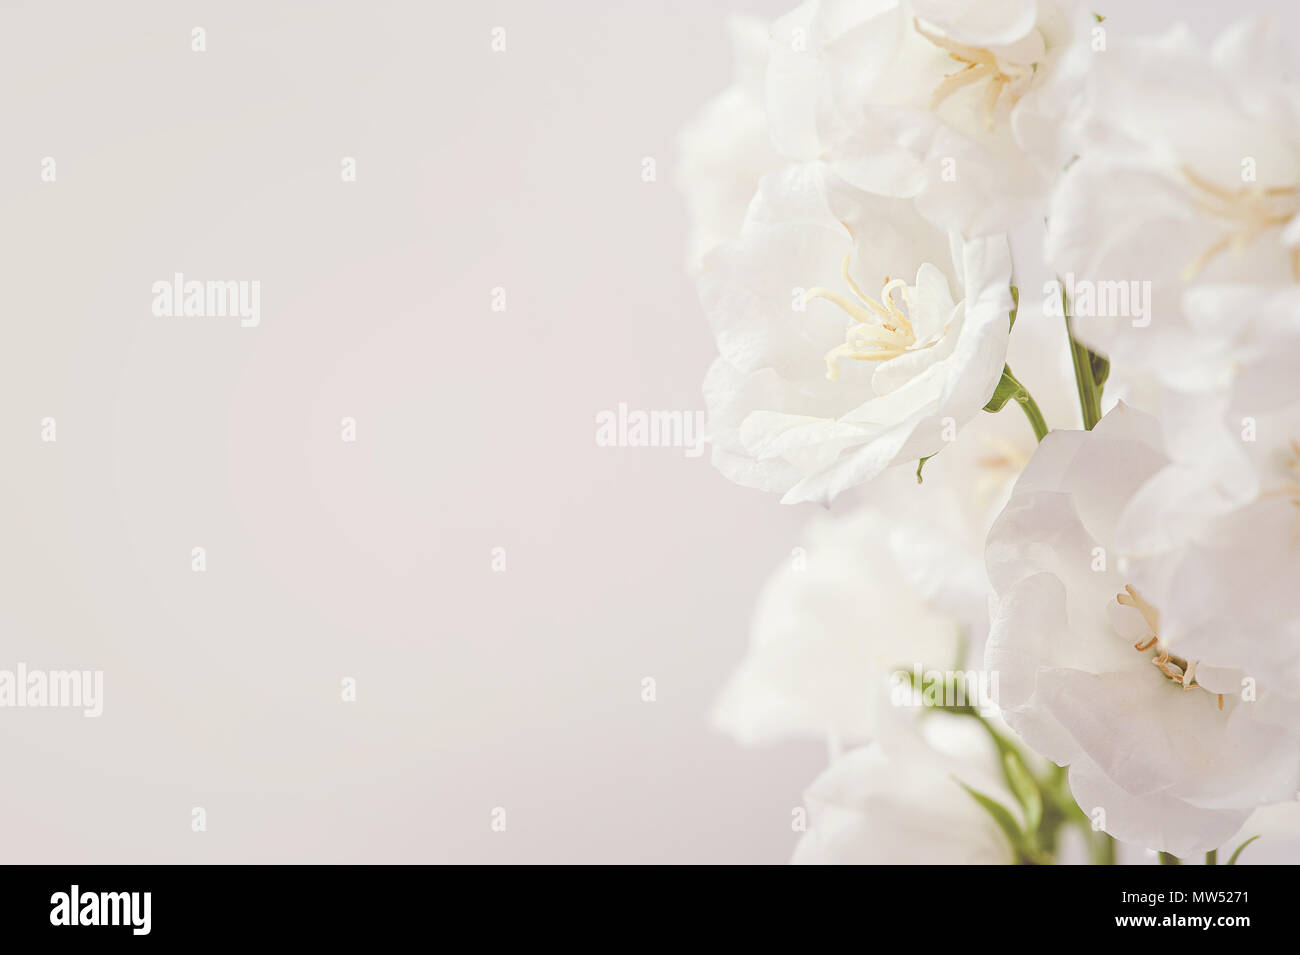 Resumen Antecedentes estacional primavera con flores blancas, natural de pascua imagen floral con espacio de copia Foto de stock